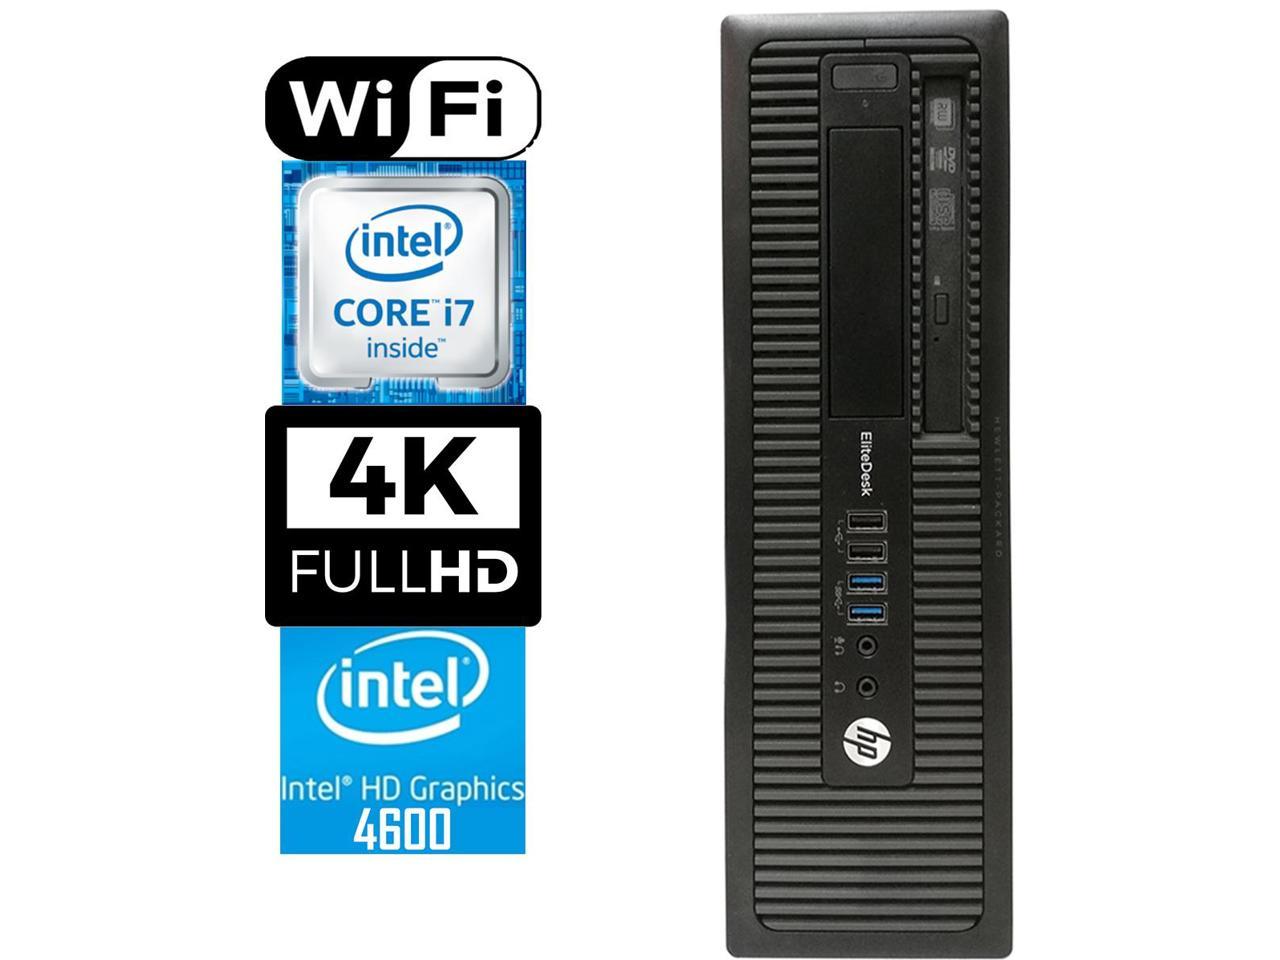 HP 800 G1 SFF Desktop Workstation, Quad-Core i7 4770 3.4, 16GB RAM, 1TB SSD, Intel HD Graphics 4600 4K 3-Monitor Support, USB 3, WiFi, Windows 7 Pro, Bluetooth, HDMI